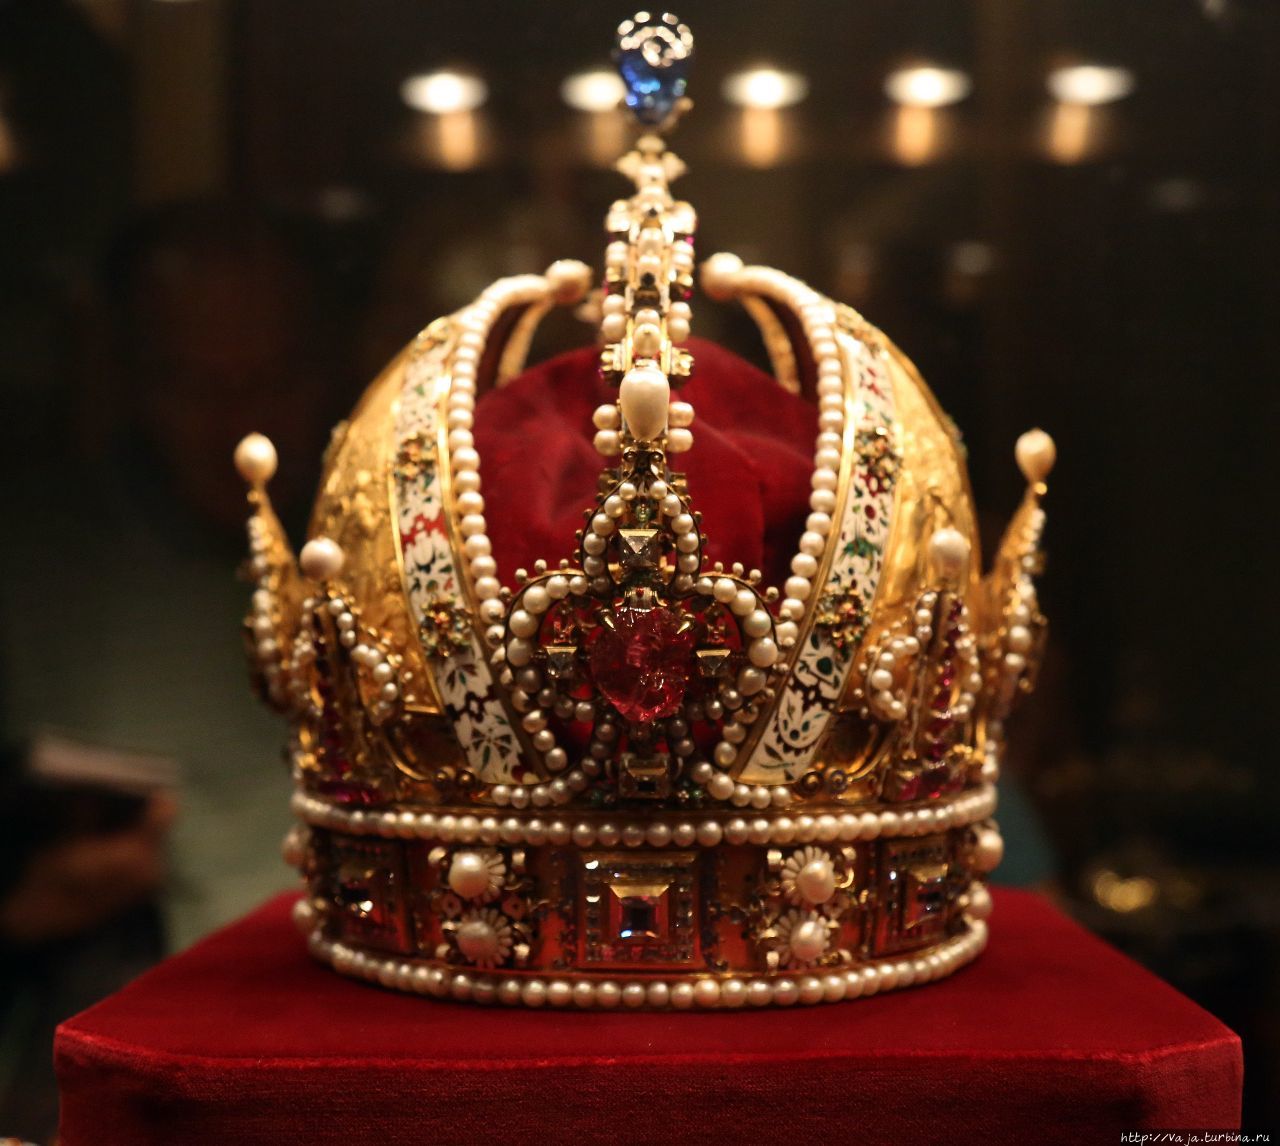 Корона Рудольфа второго Габсбурга. Корона была изготовлена для императора Рудольфа второго голландским мастером Яном Вермеером в 1602 году Вена, Австрия